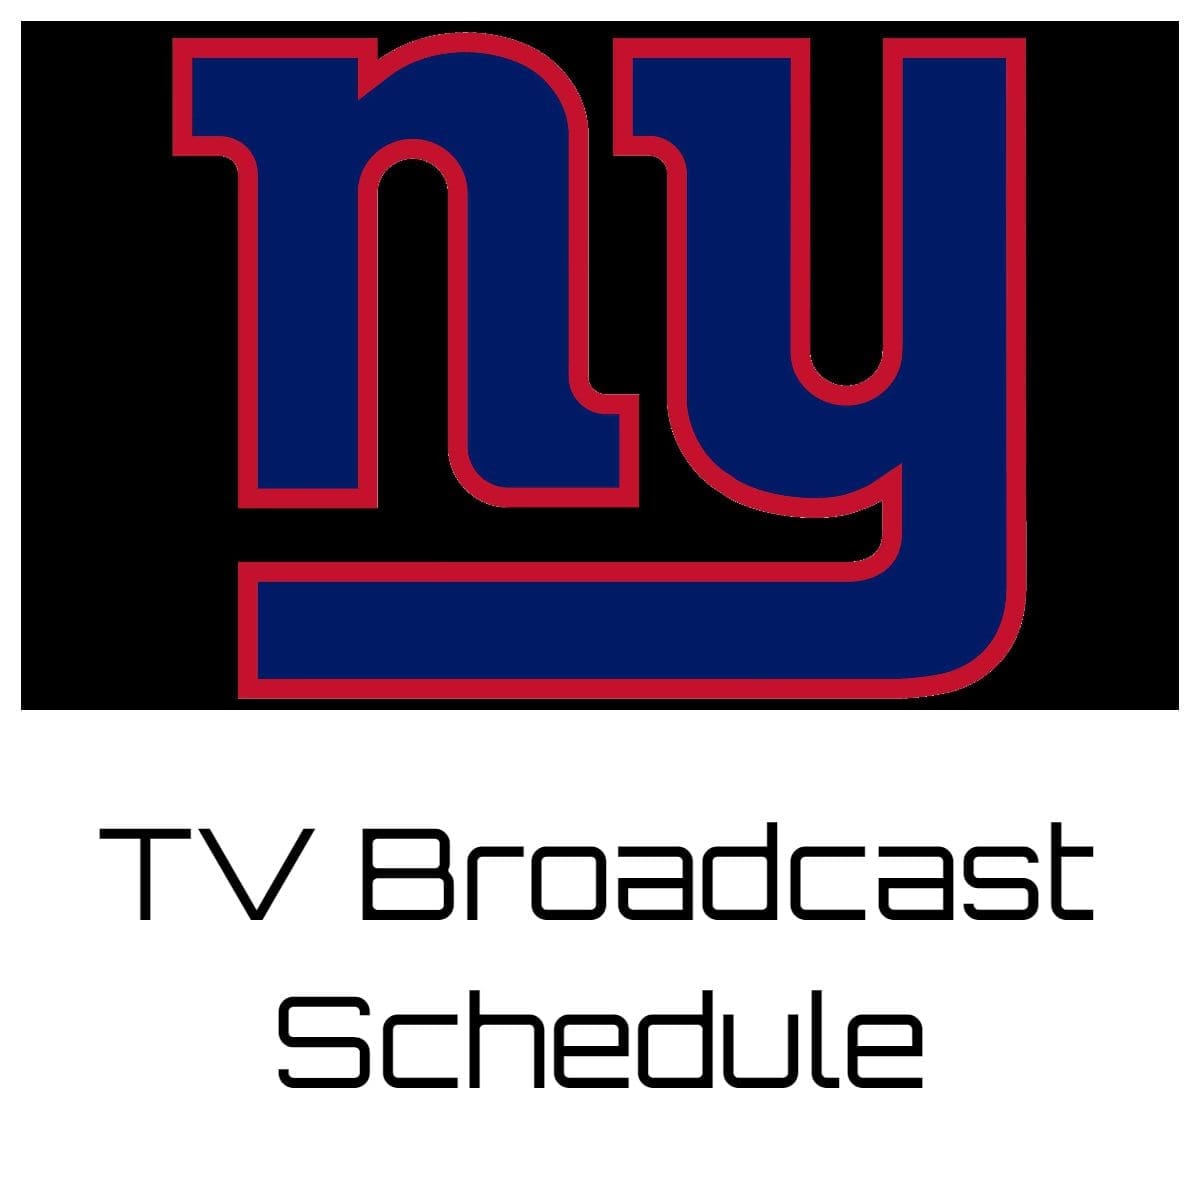 New York Giants TV Broadcast Schedule